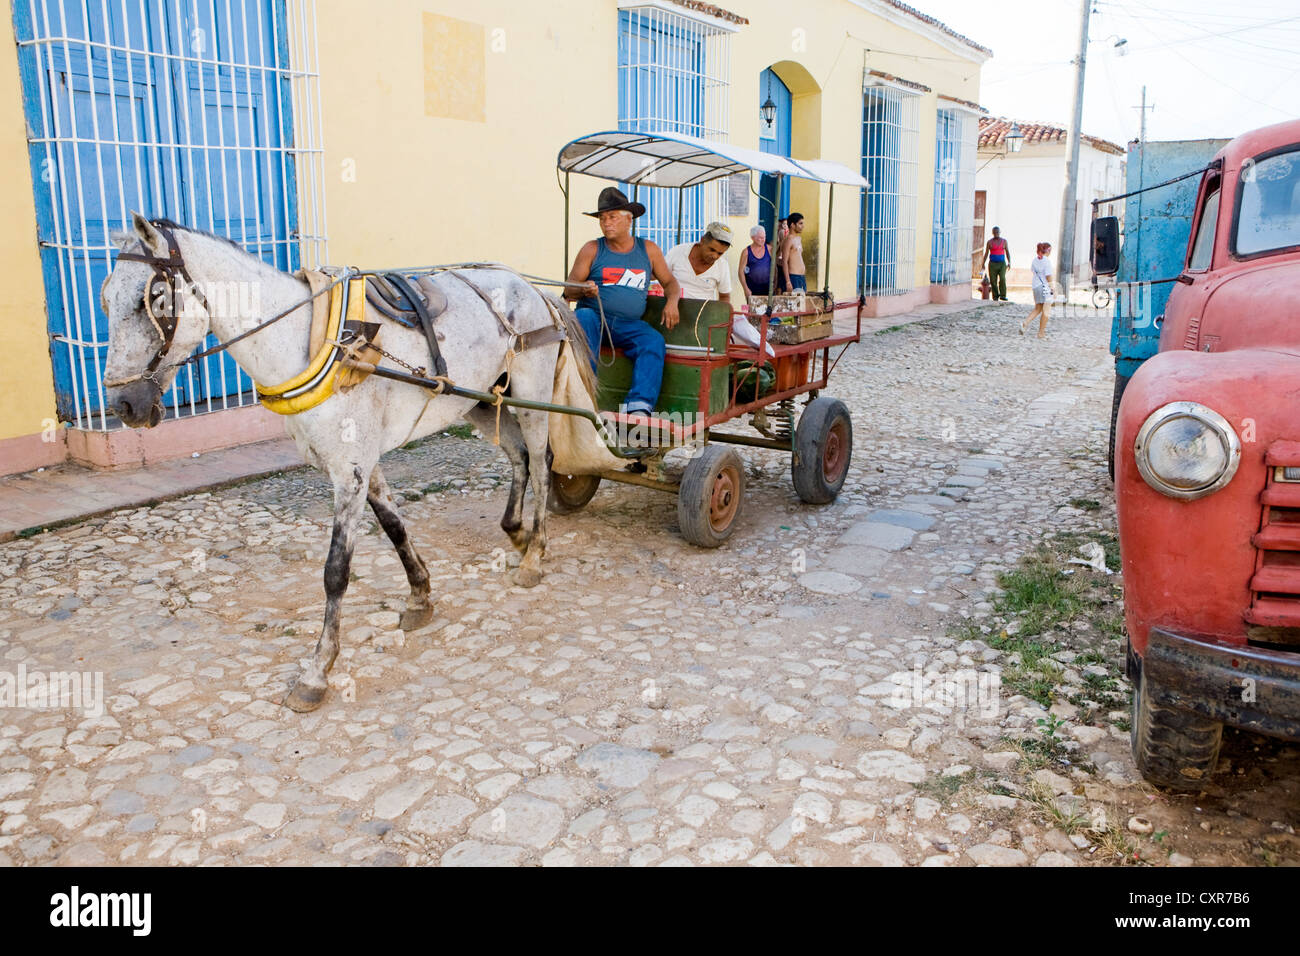 Un cheval panier et un vieux camion rouge dans le quartier historique, Trinidad, Cuba, Amérique Centrale Banque D'Images